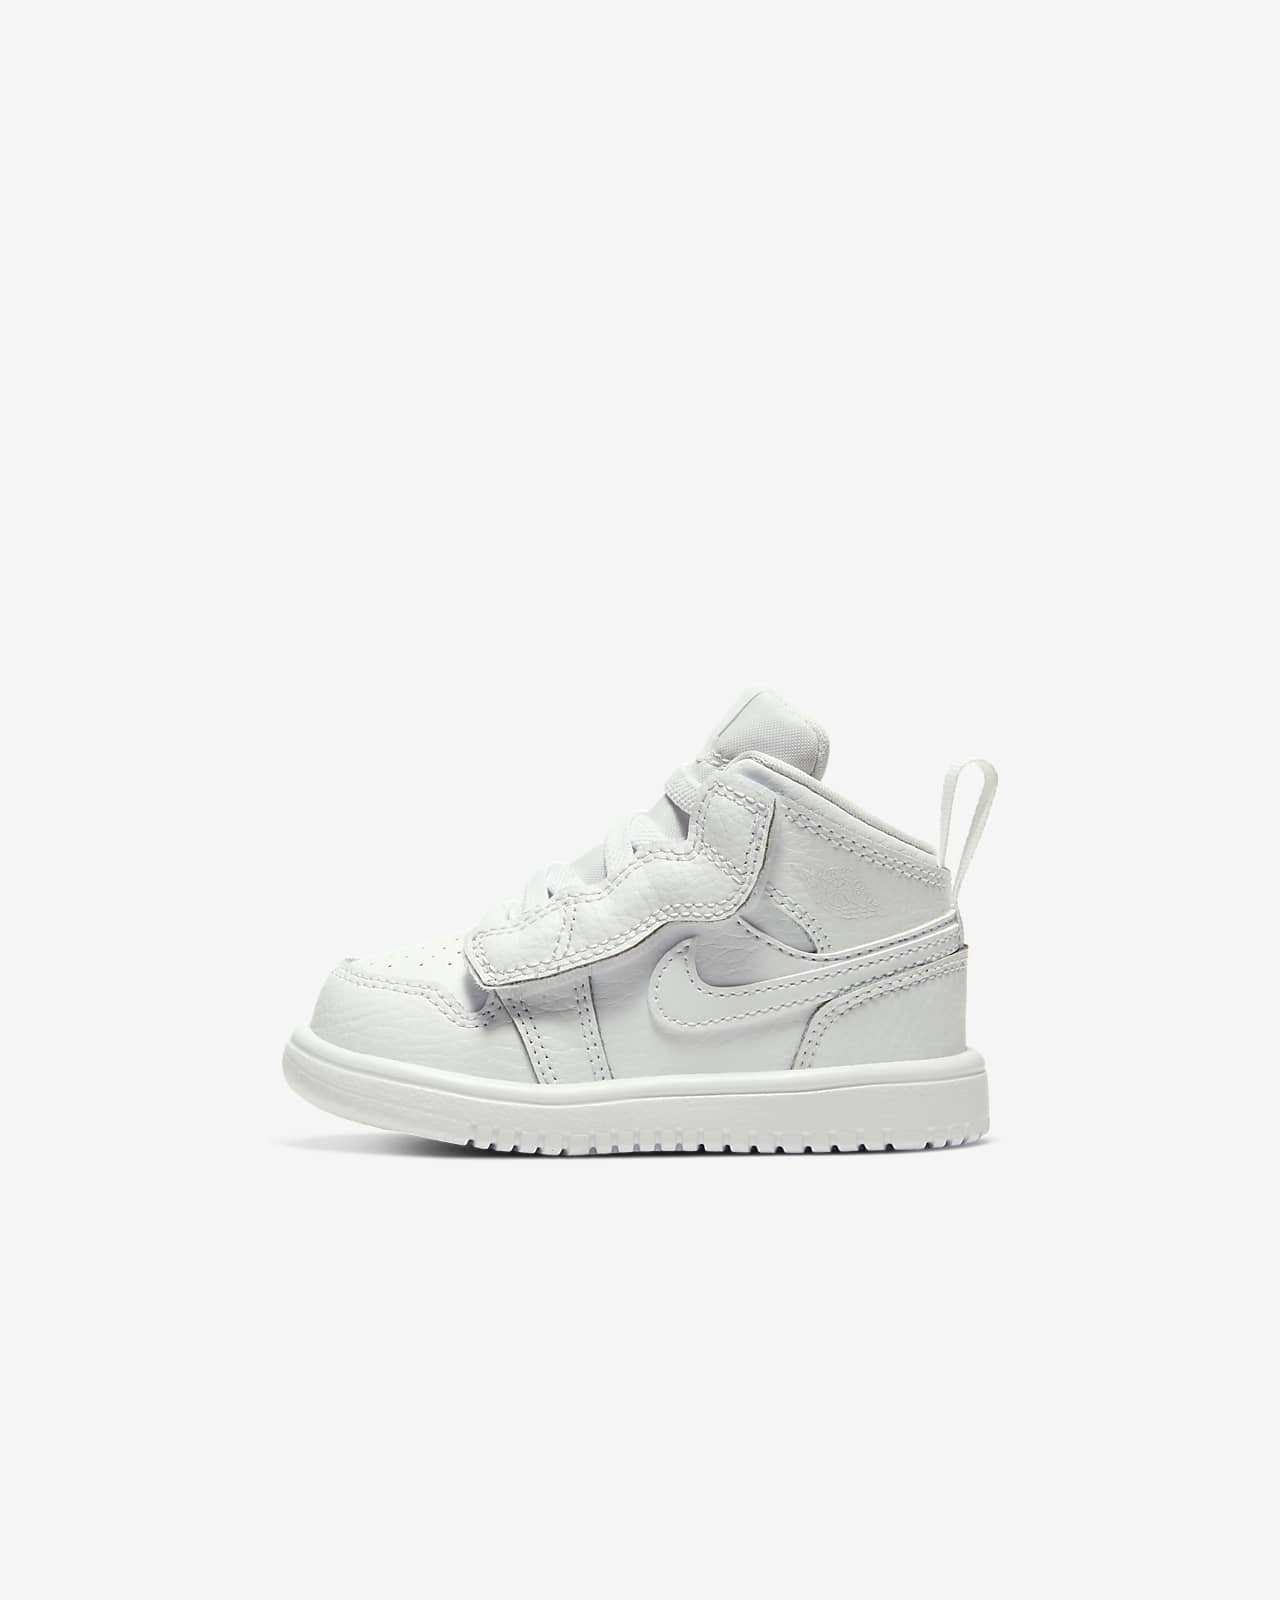 Jordan 1 Mid Baby and Toddler Shoe. Nike LU